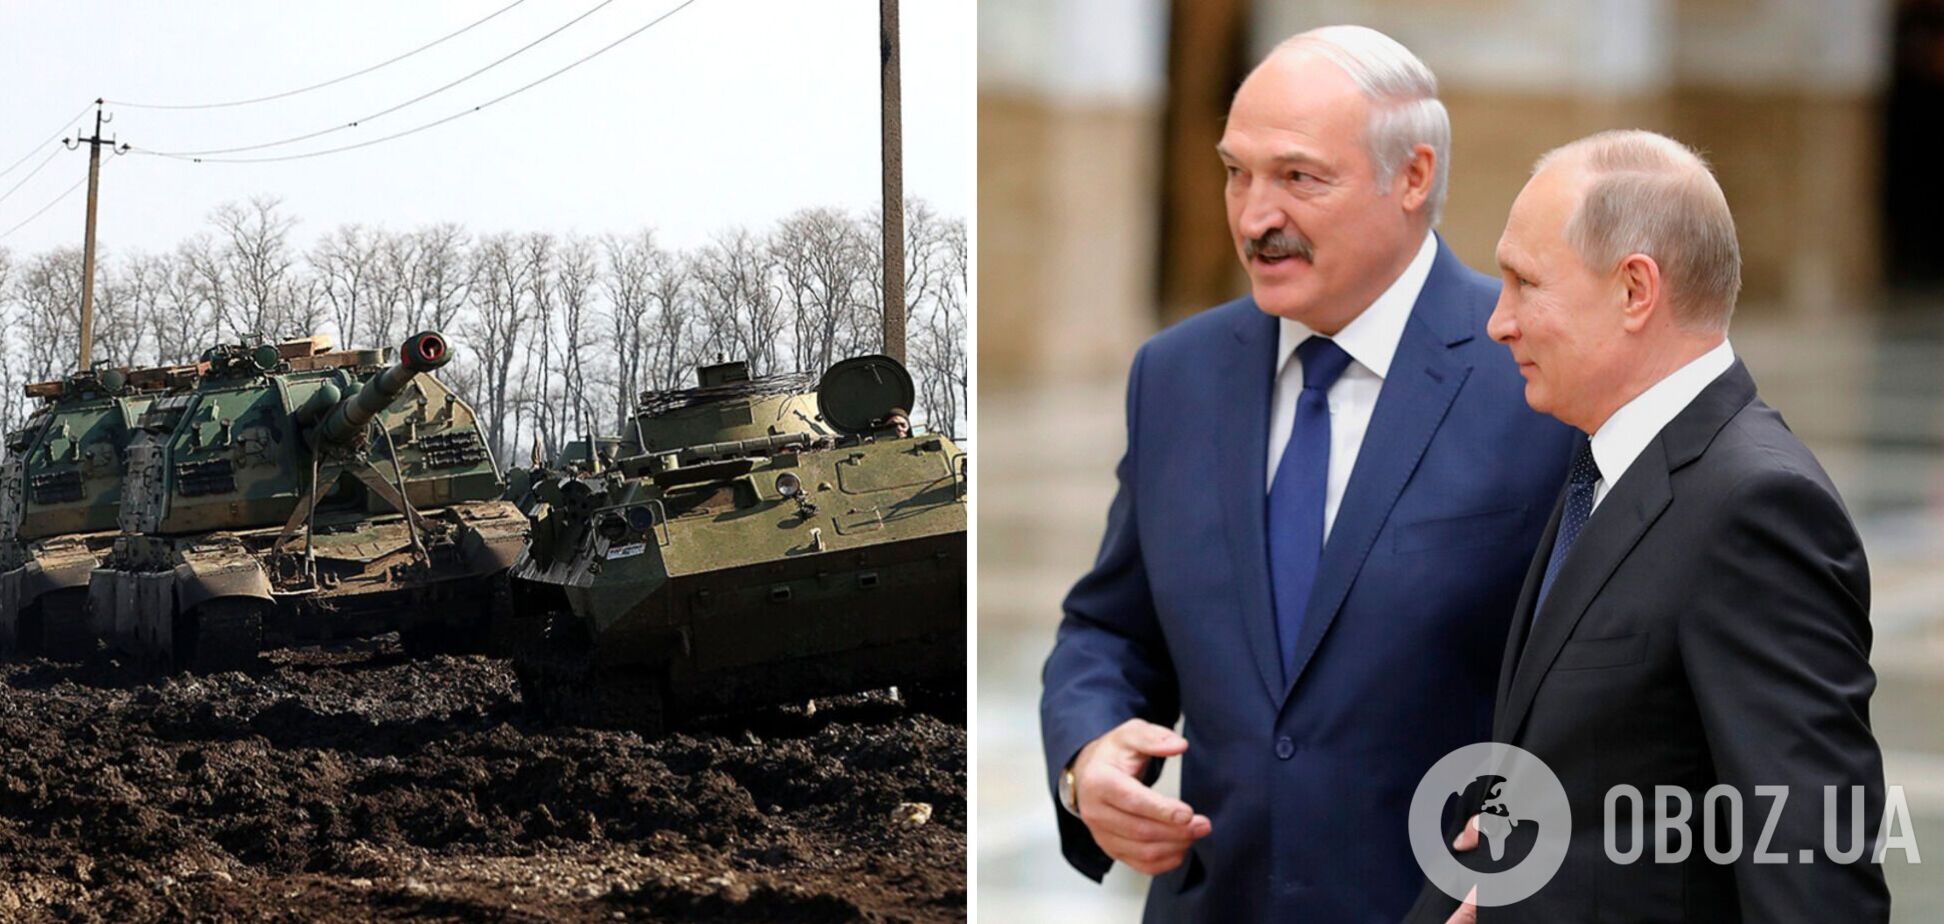 Лукашенко прибыл в Россию на переговоры с Путиным. Видео и все подробности